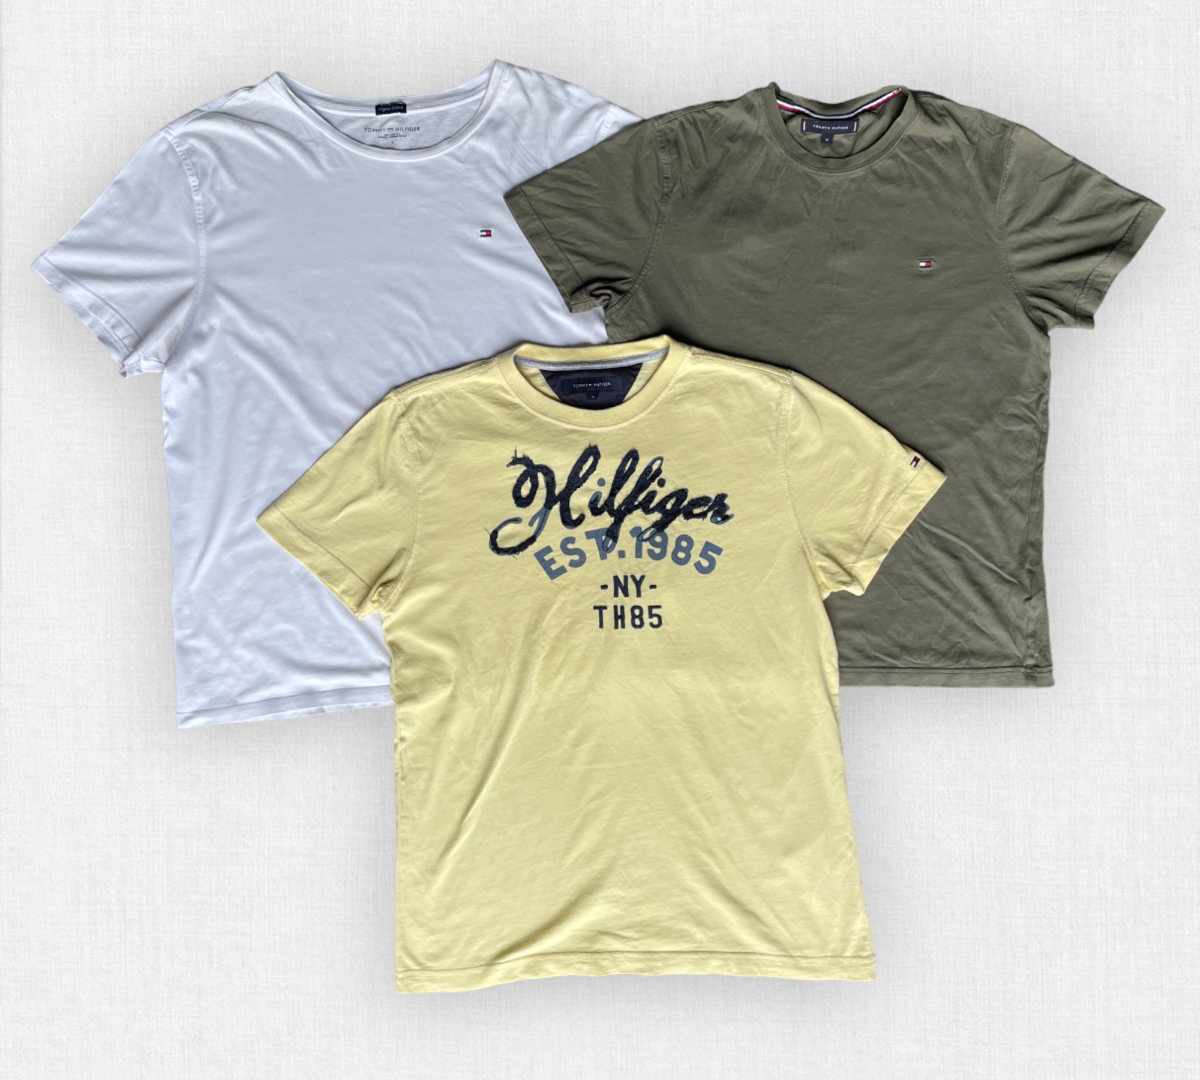 Vintage Tommy Hilfiger t-shirts.